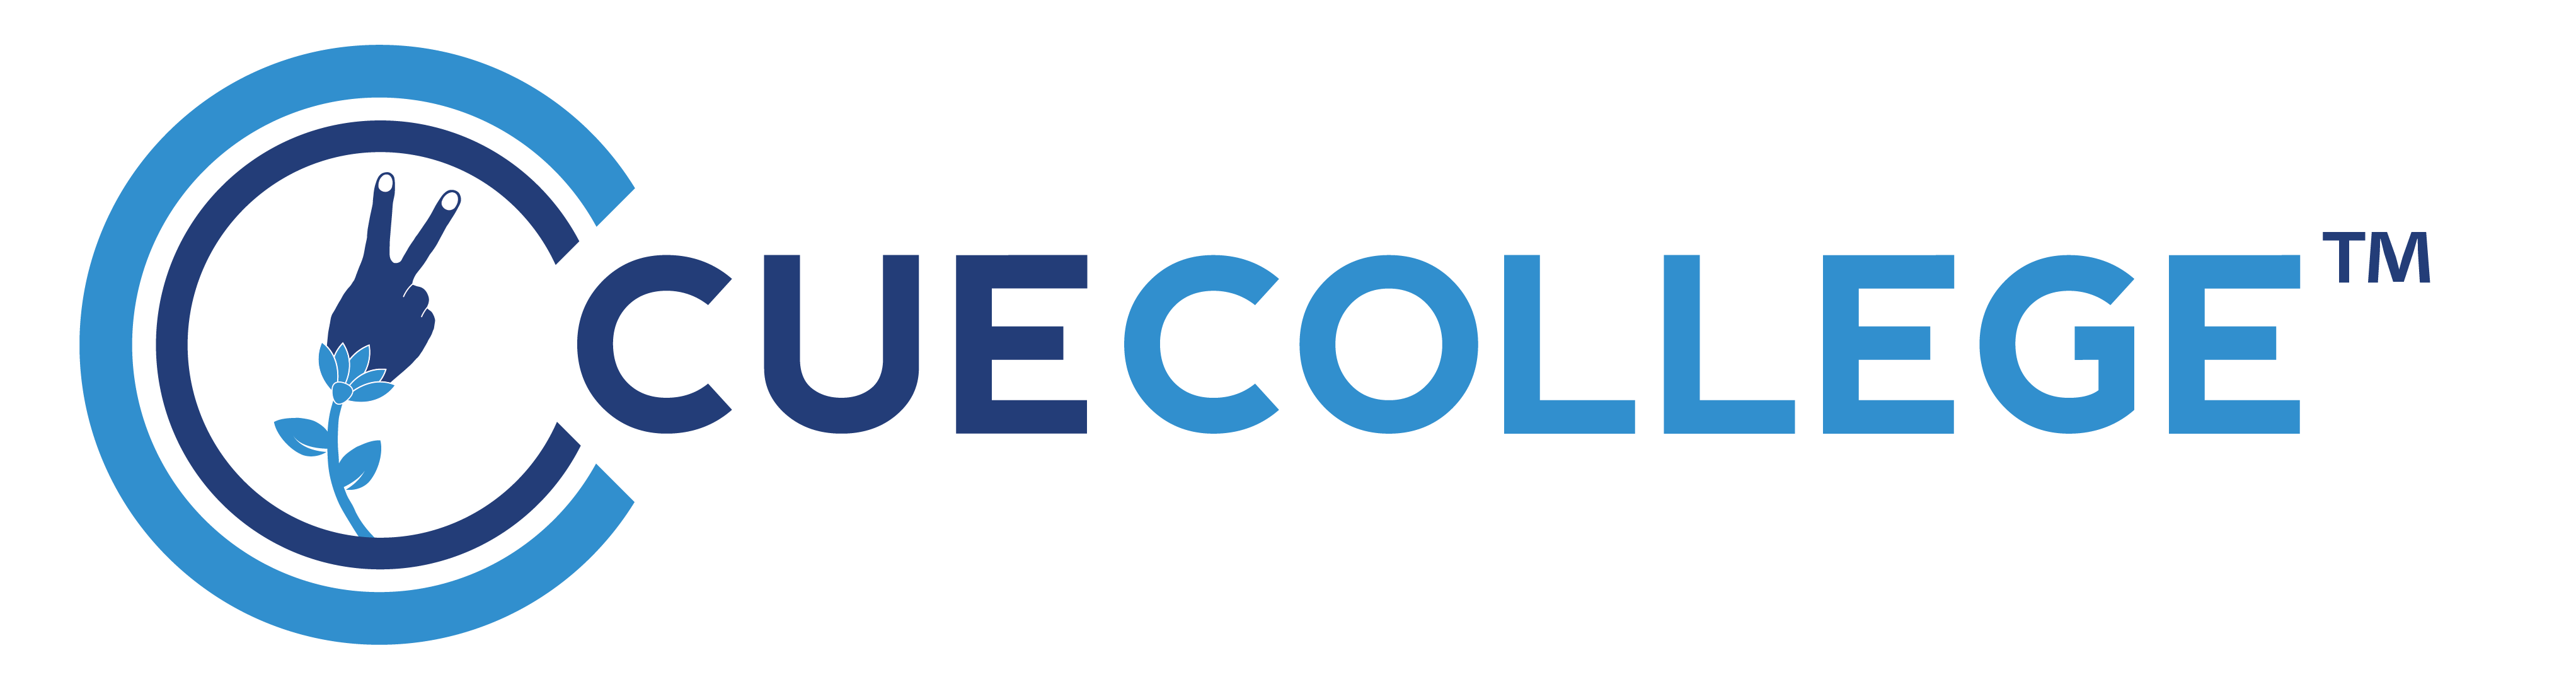 Cue College logo